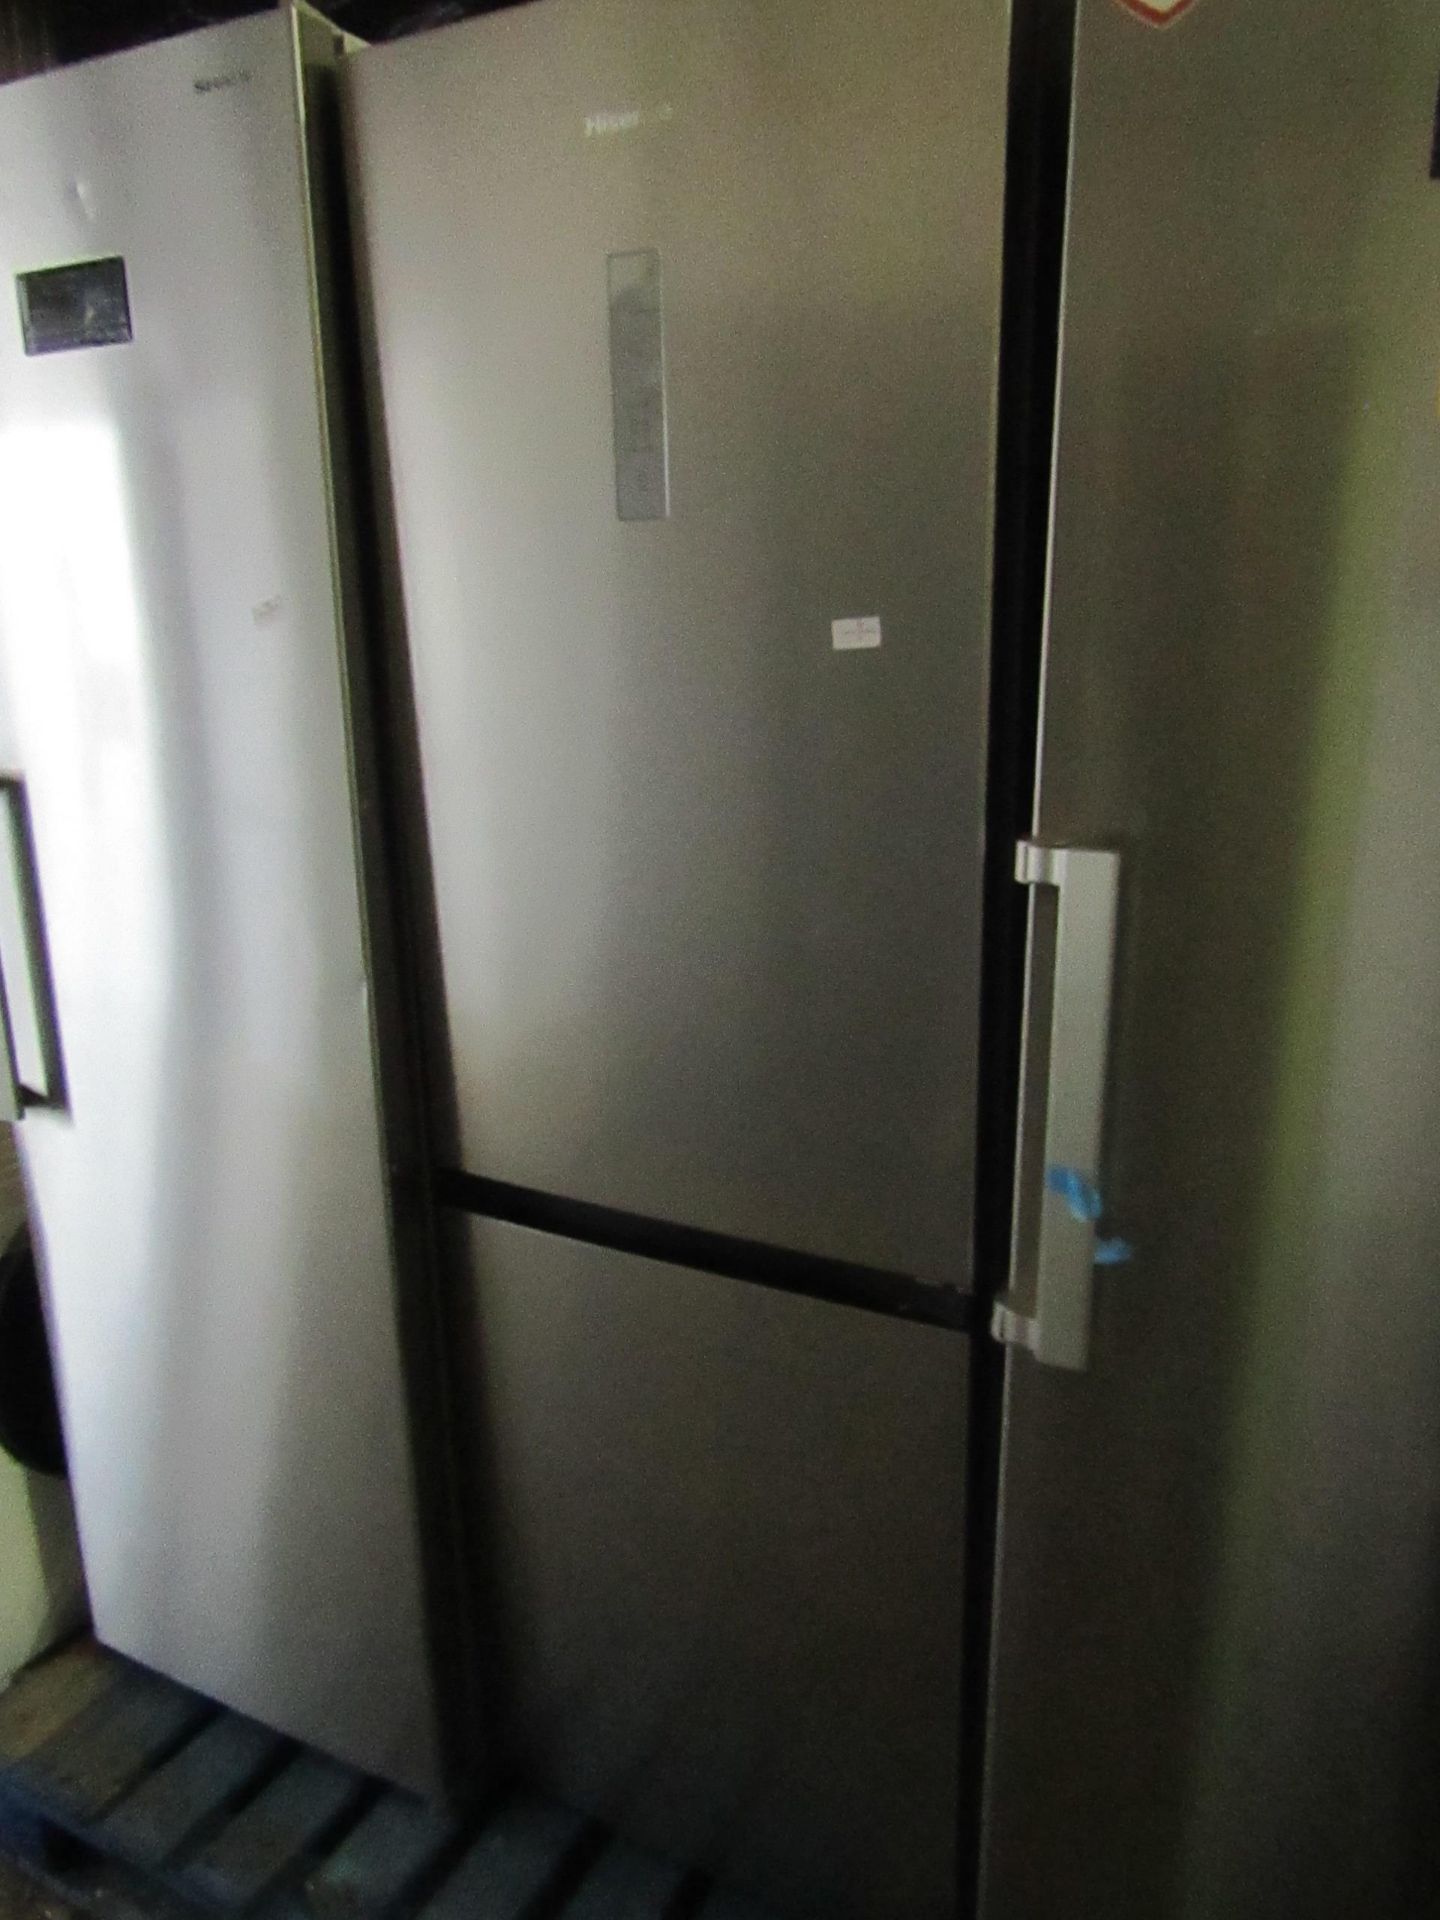 Hisense fridge freezer, untested due to no plug.